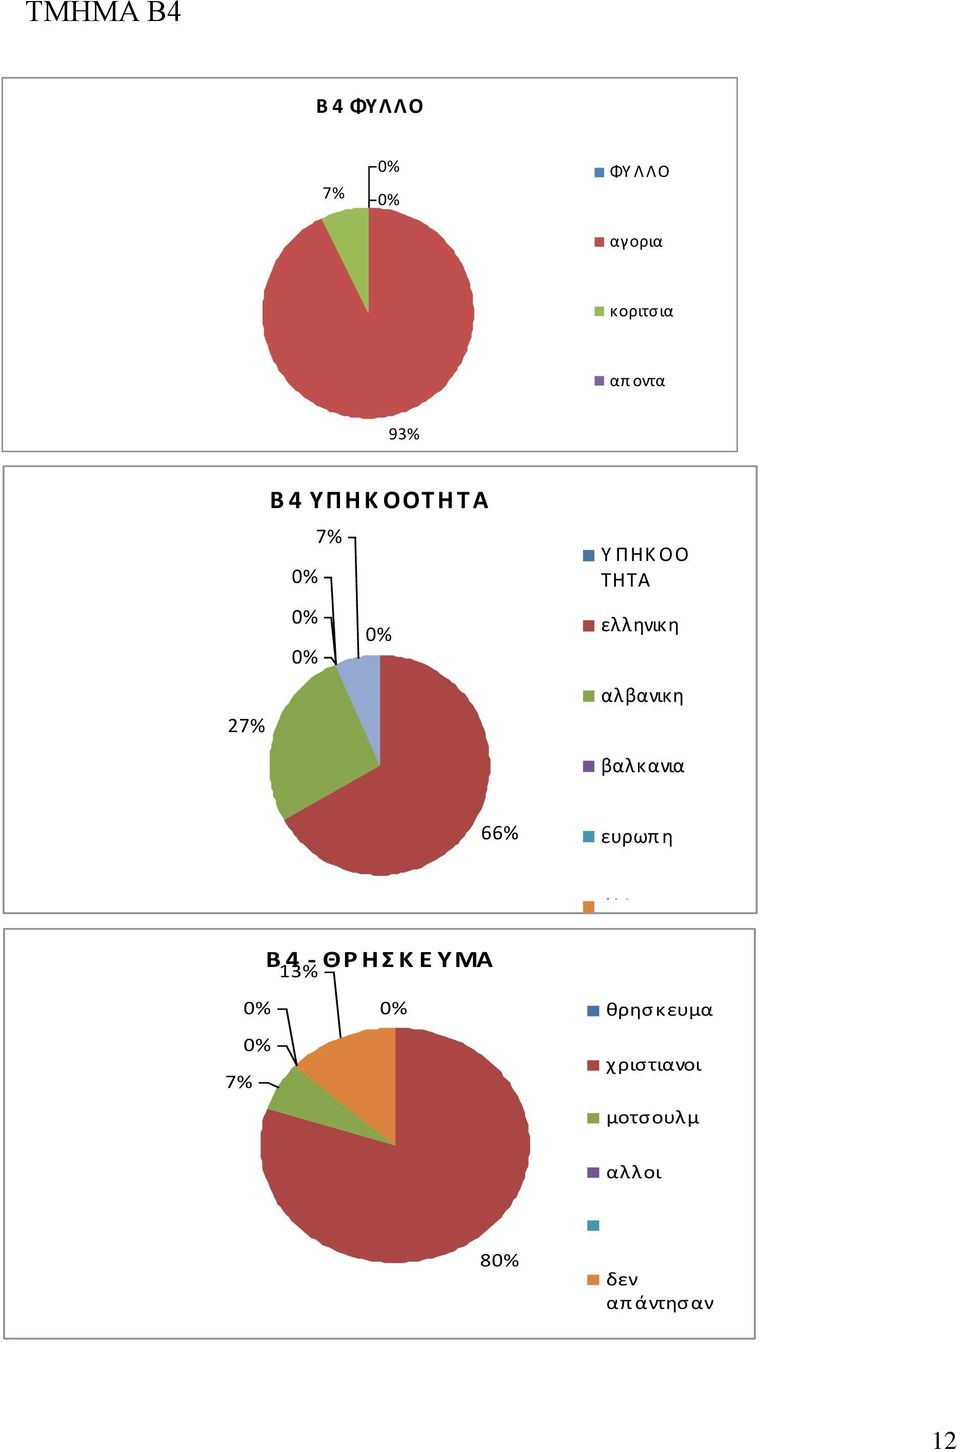 βαλκανια 66% ευρωπ η άλλη Β 4 - ΘΡ Η Σ Κ Ε ΥΜΑ 13% 7% δεν απ